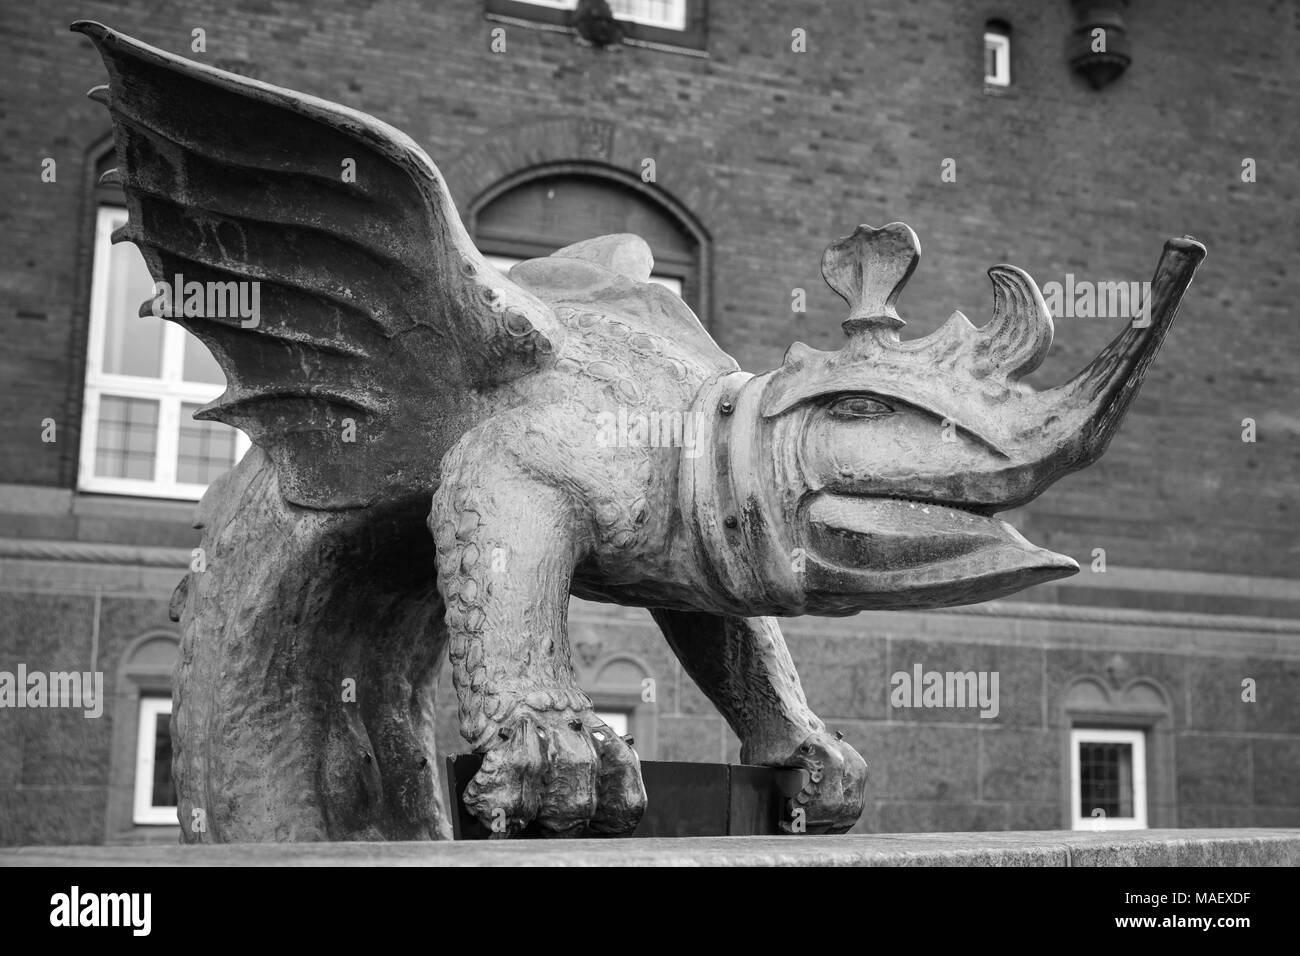 Detalle desde el borde de la cuenca del dragón fuente situada en la Plaza del Ayuntamiento de Copenhague, Dinamarca. Fue inaugurado en 1904. Phot blanco y negro Foto de stock